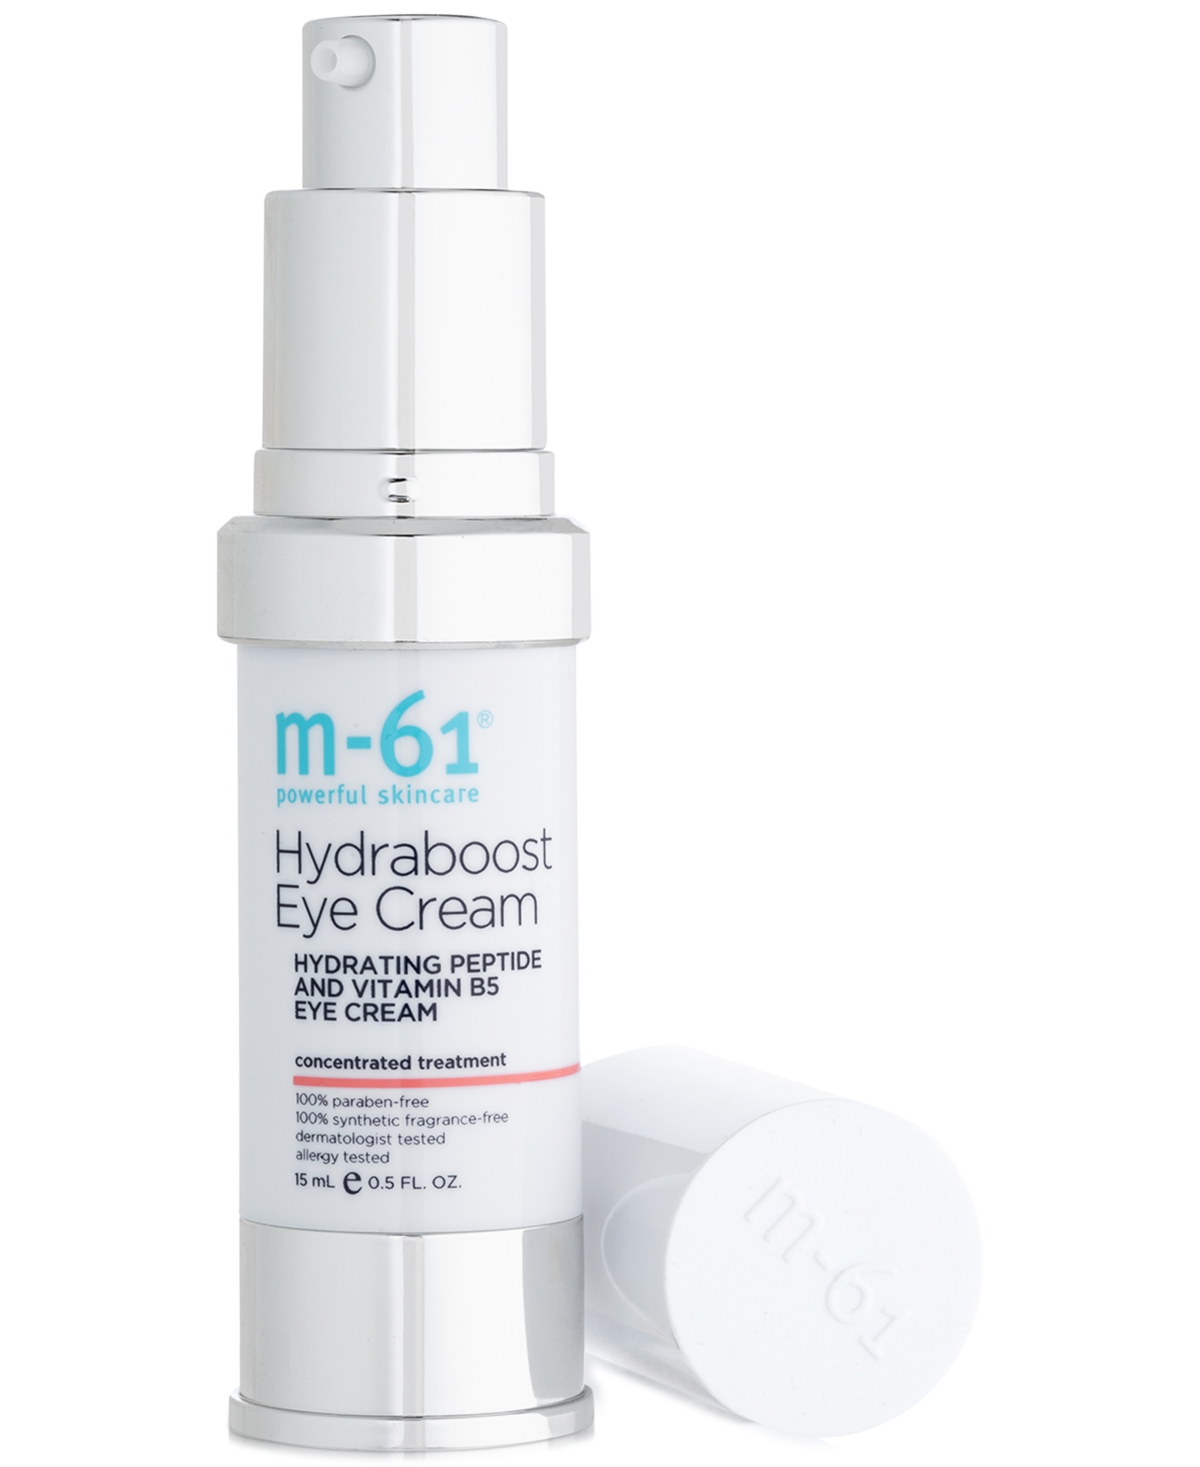 Hydraboost Eye Hydrating Peptide & Vitamin B5 Eye Cream, 0.5 oz.